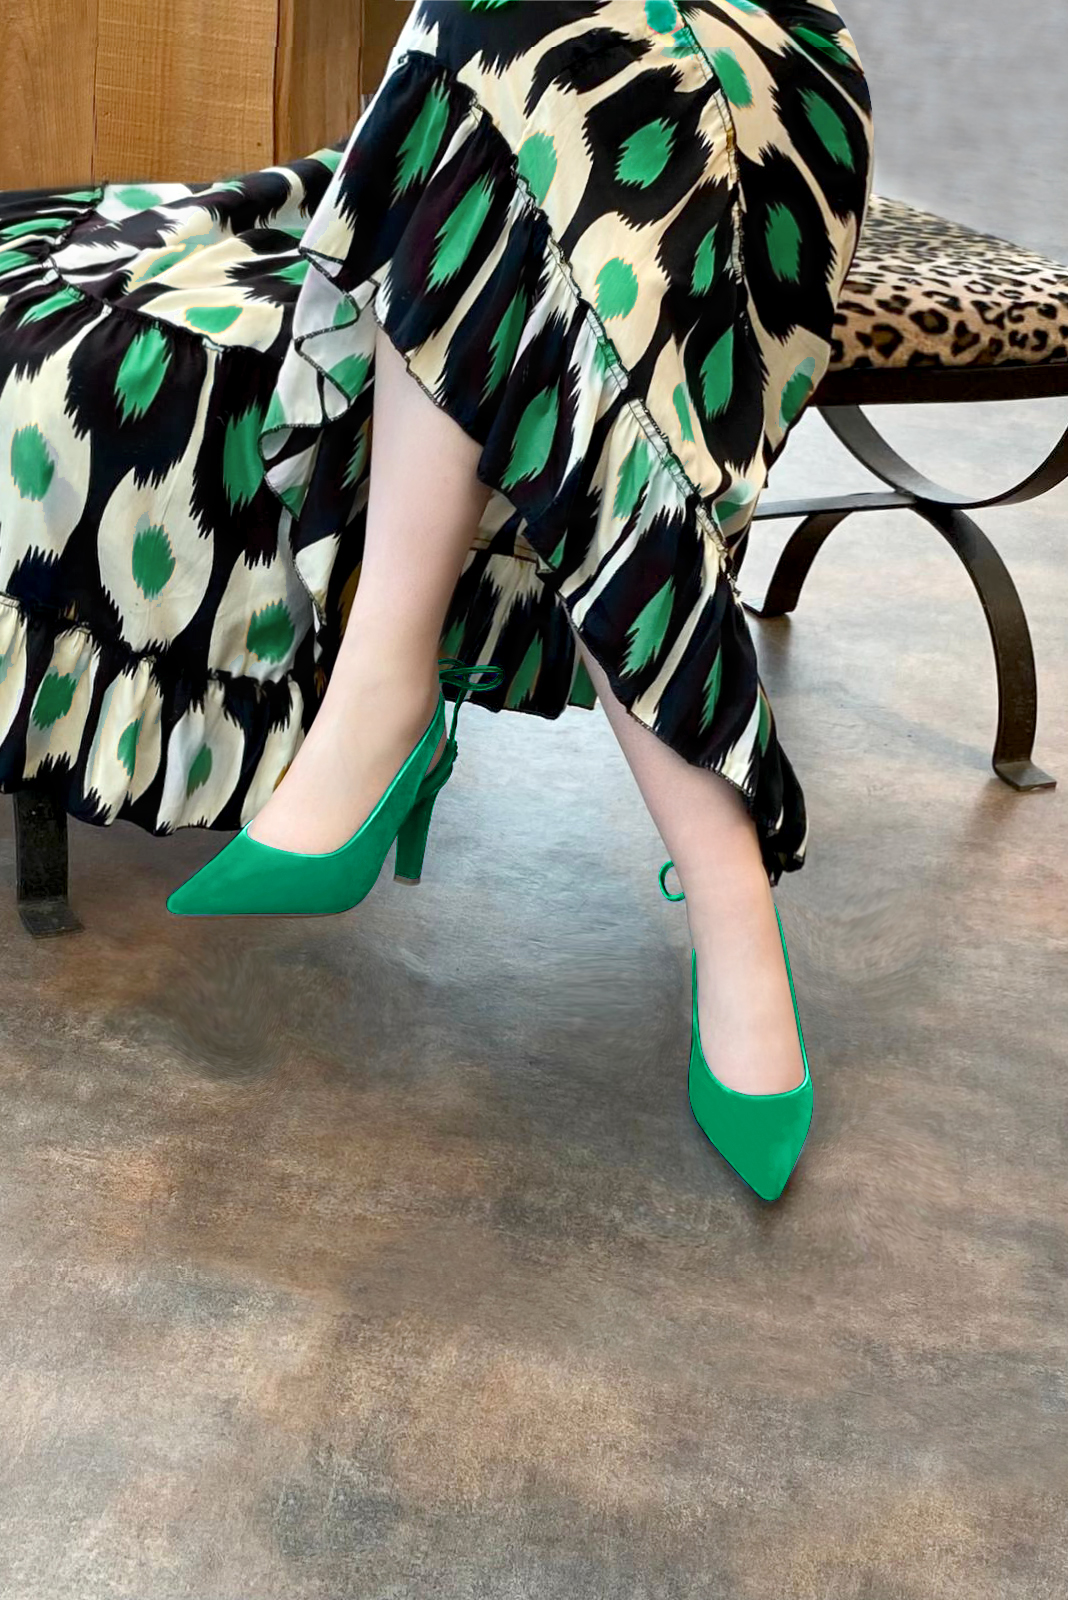 Chaussure femme à brides :  couleur vert émeraude. Bout pointu. Talon haut fin. Vue porté - Florence KOOIJMAN